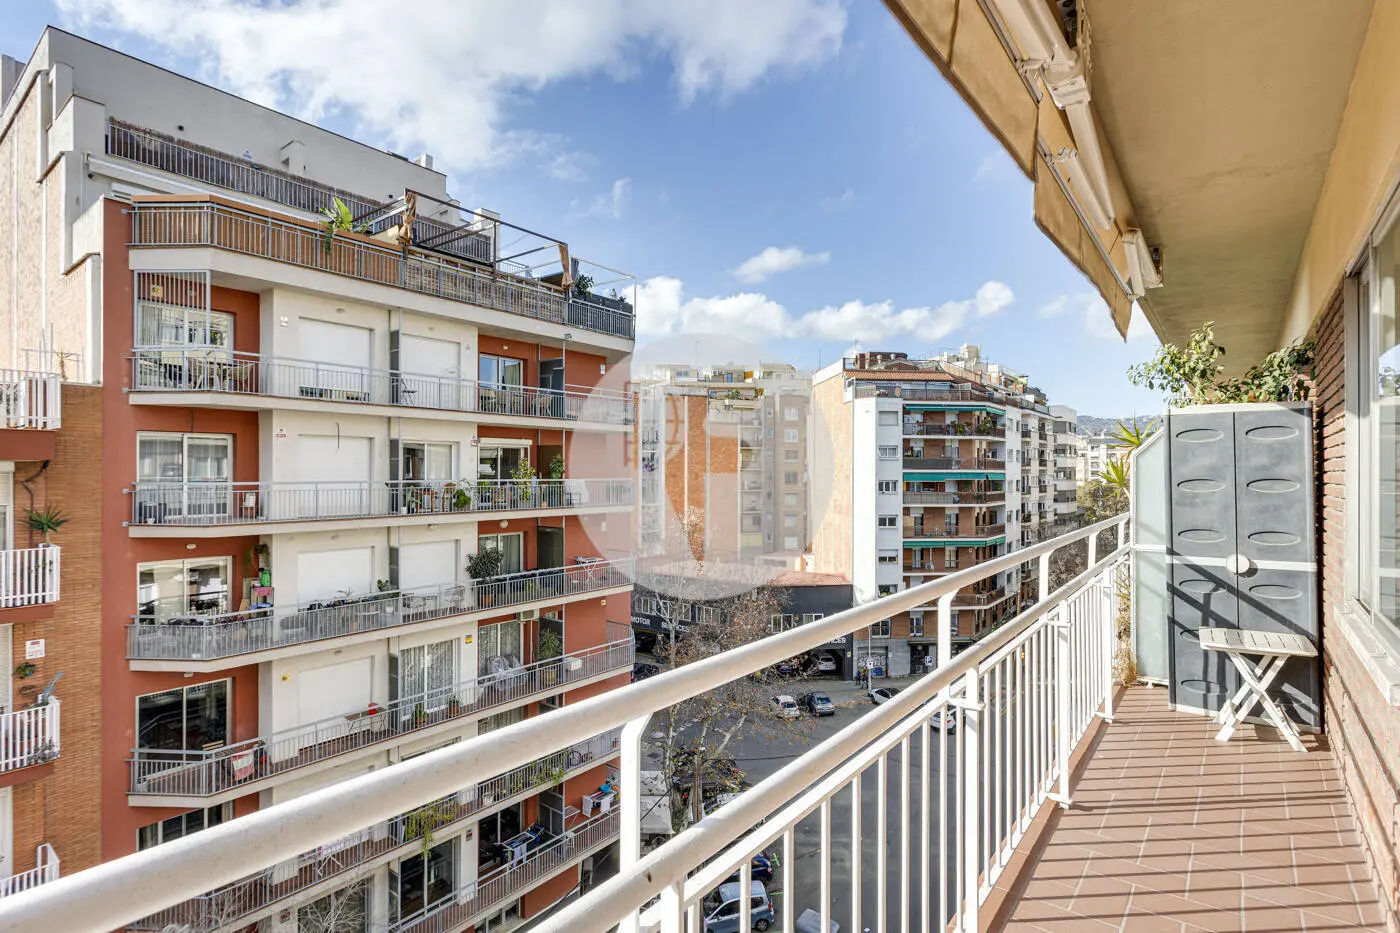 Pis de 3 habitacions ubicat al barri de la Nova Esquerra de l'Eixample de Barcelona. 6